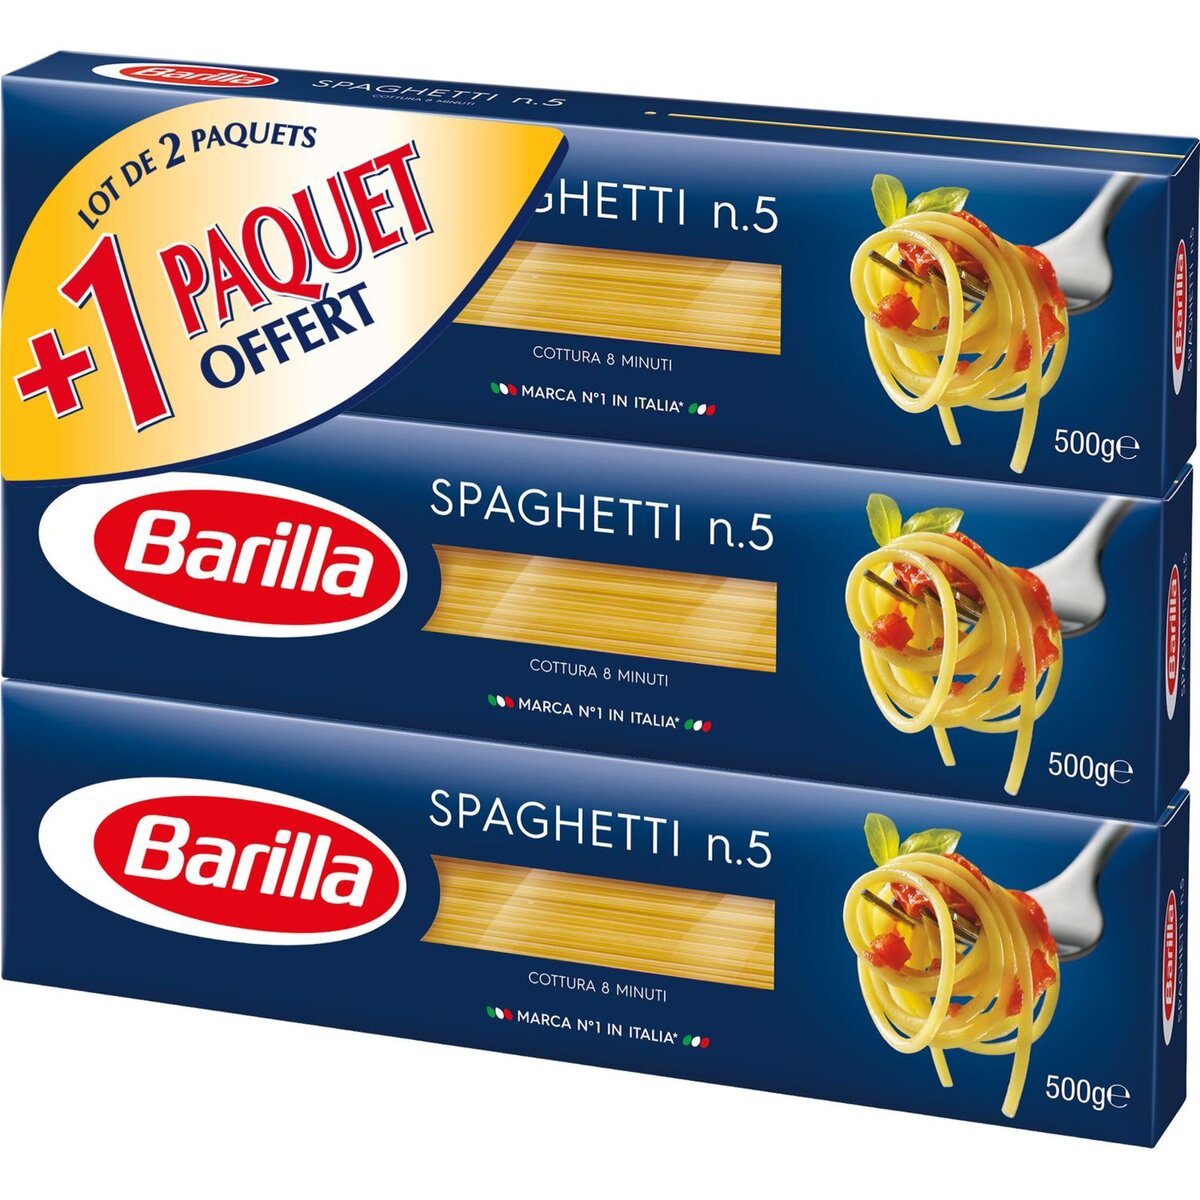 BARILLA Barilla spaghetti moyen 2x500g +1 offert